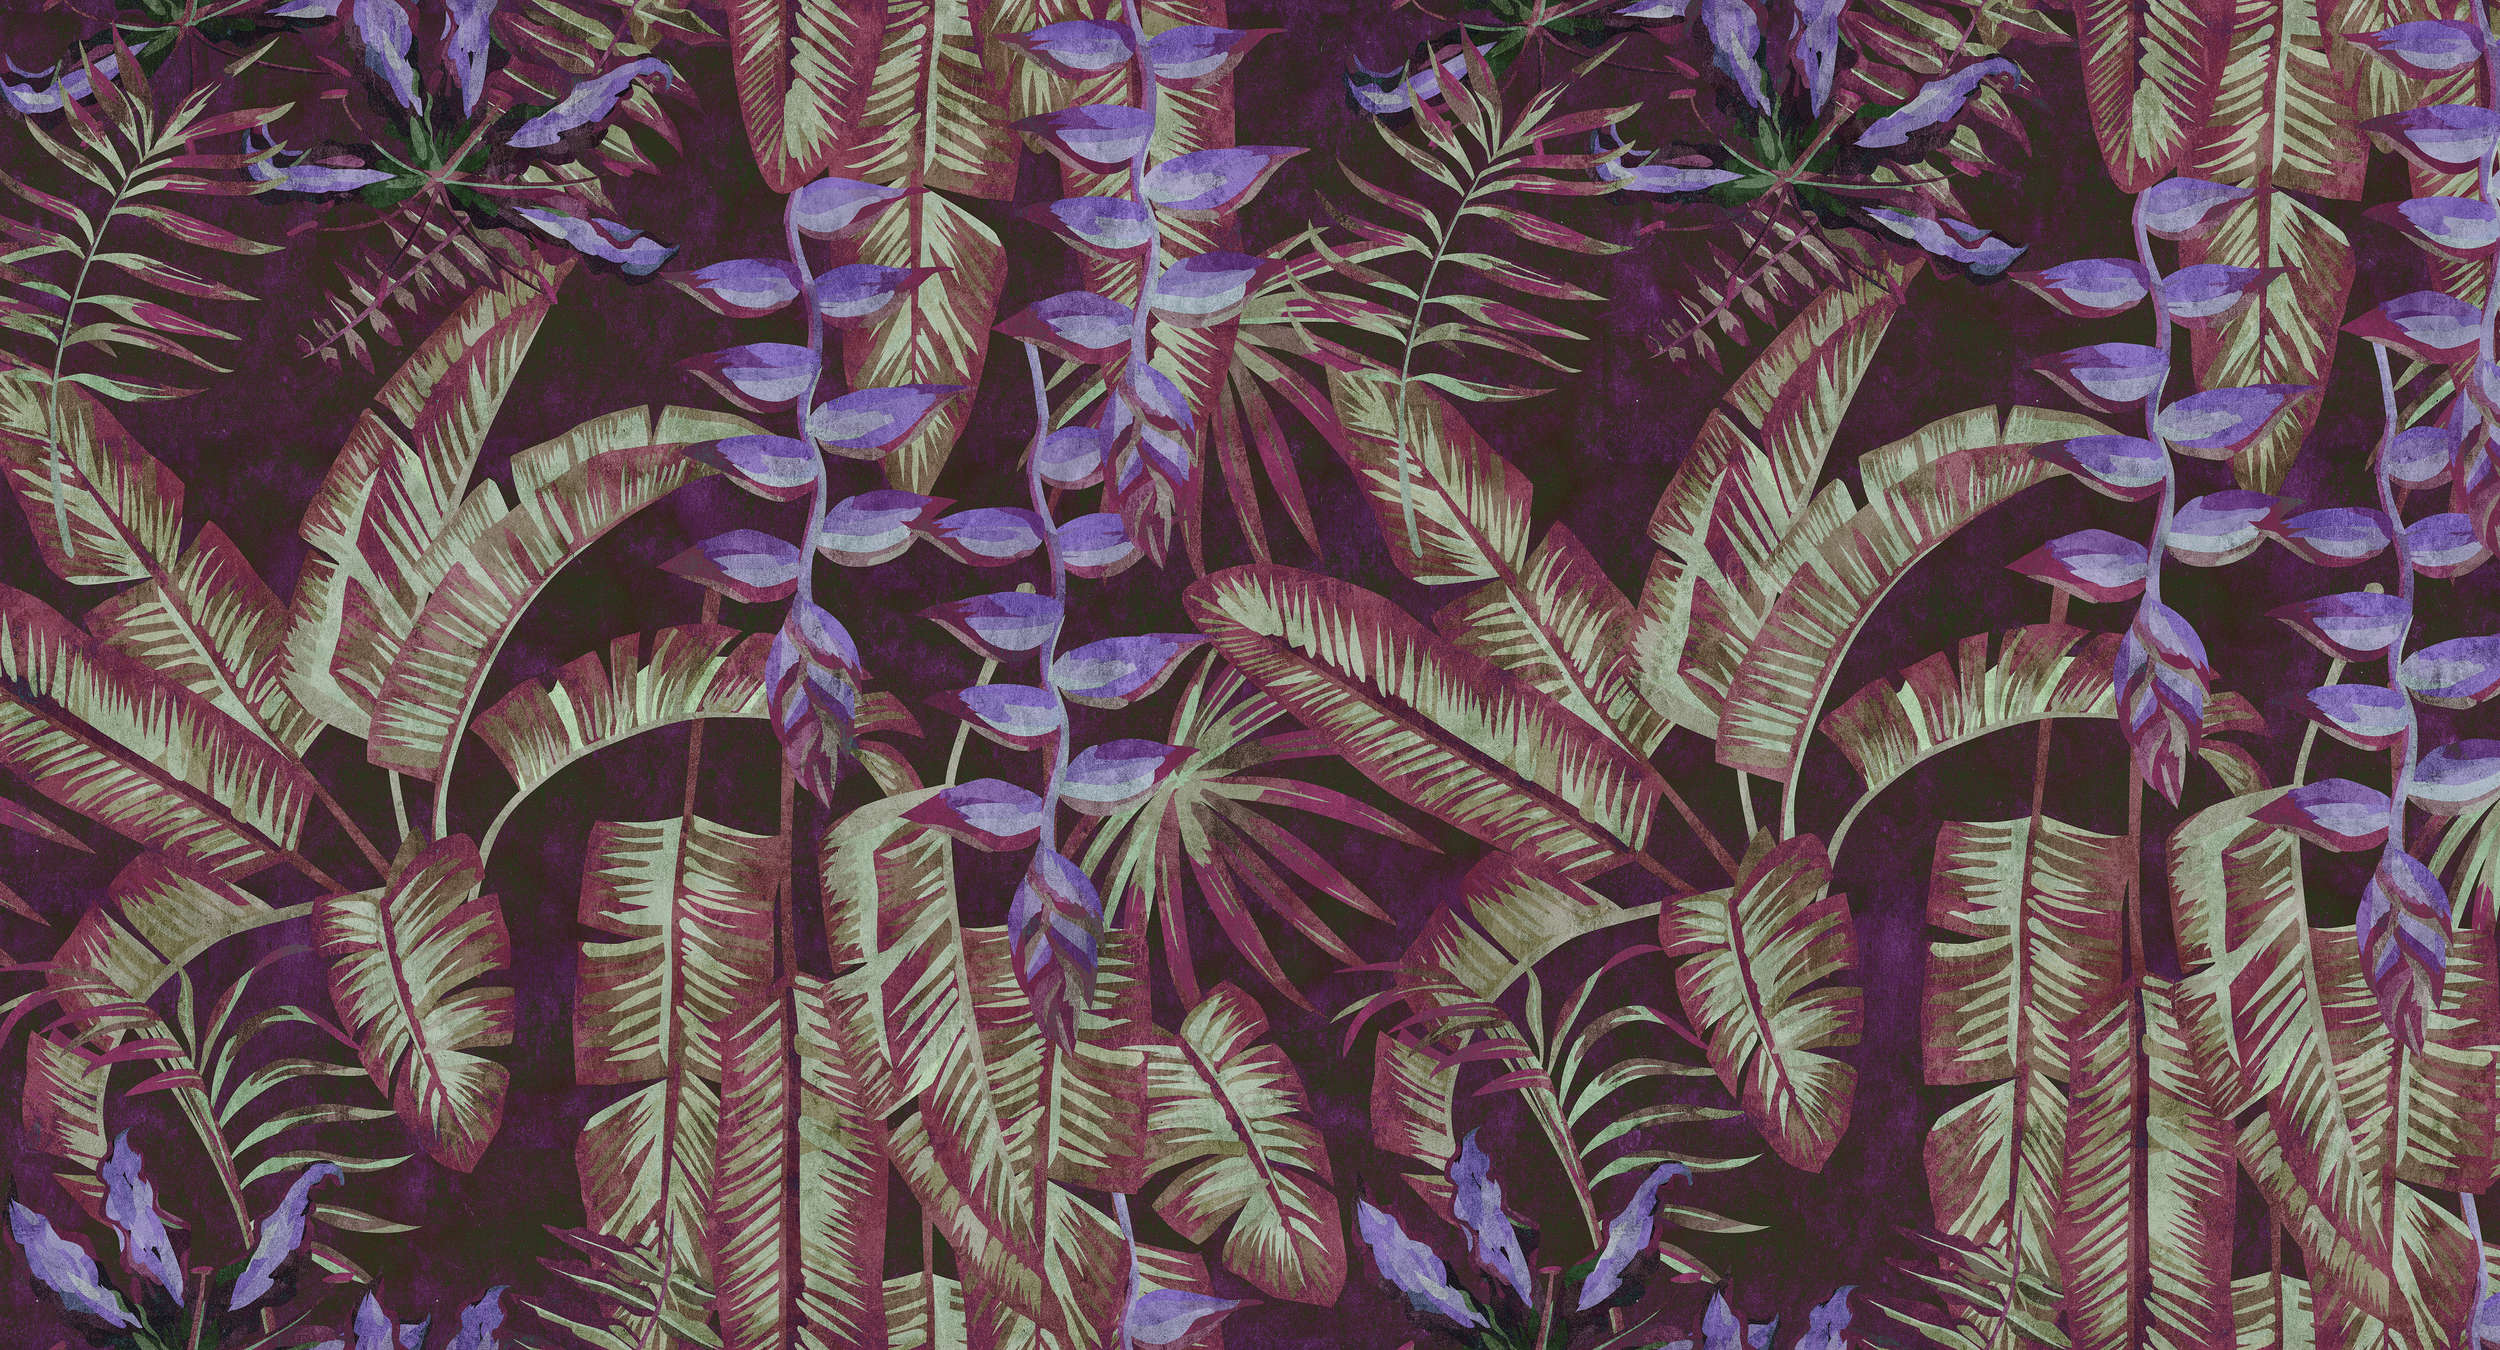             Tropicana 3 - Carta da parati tropicale con struttura in carta assorbente con foglie e felci - Rosso, Viola | Vello liscio premium
        